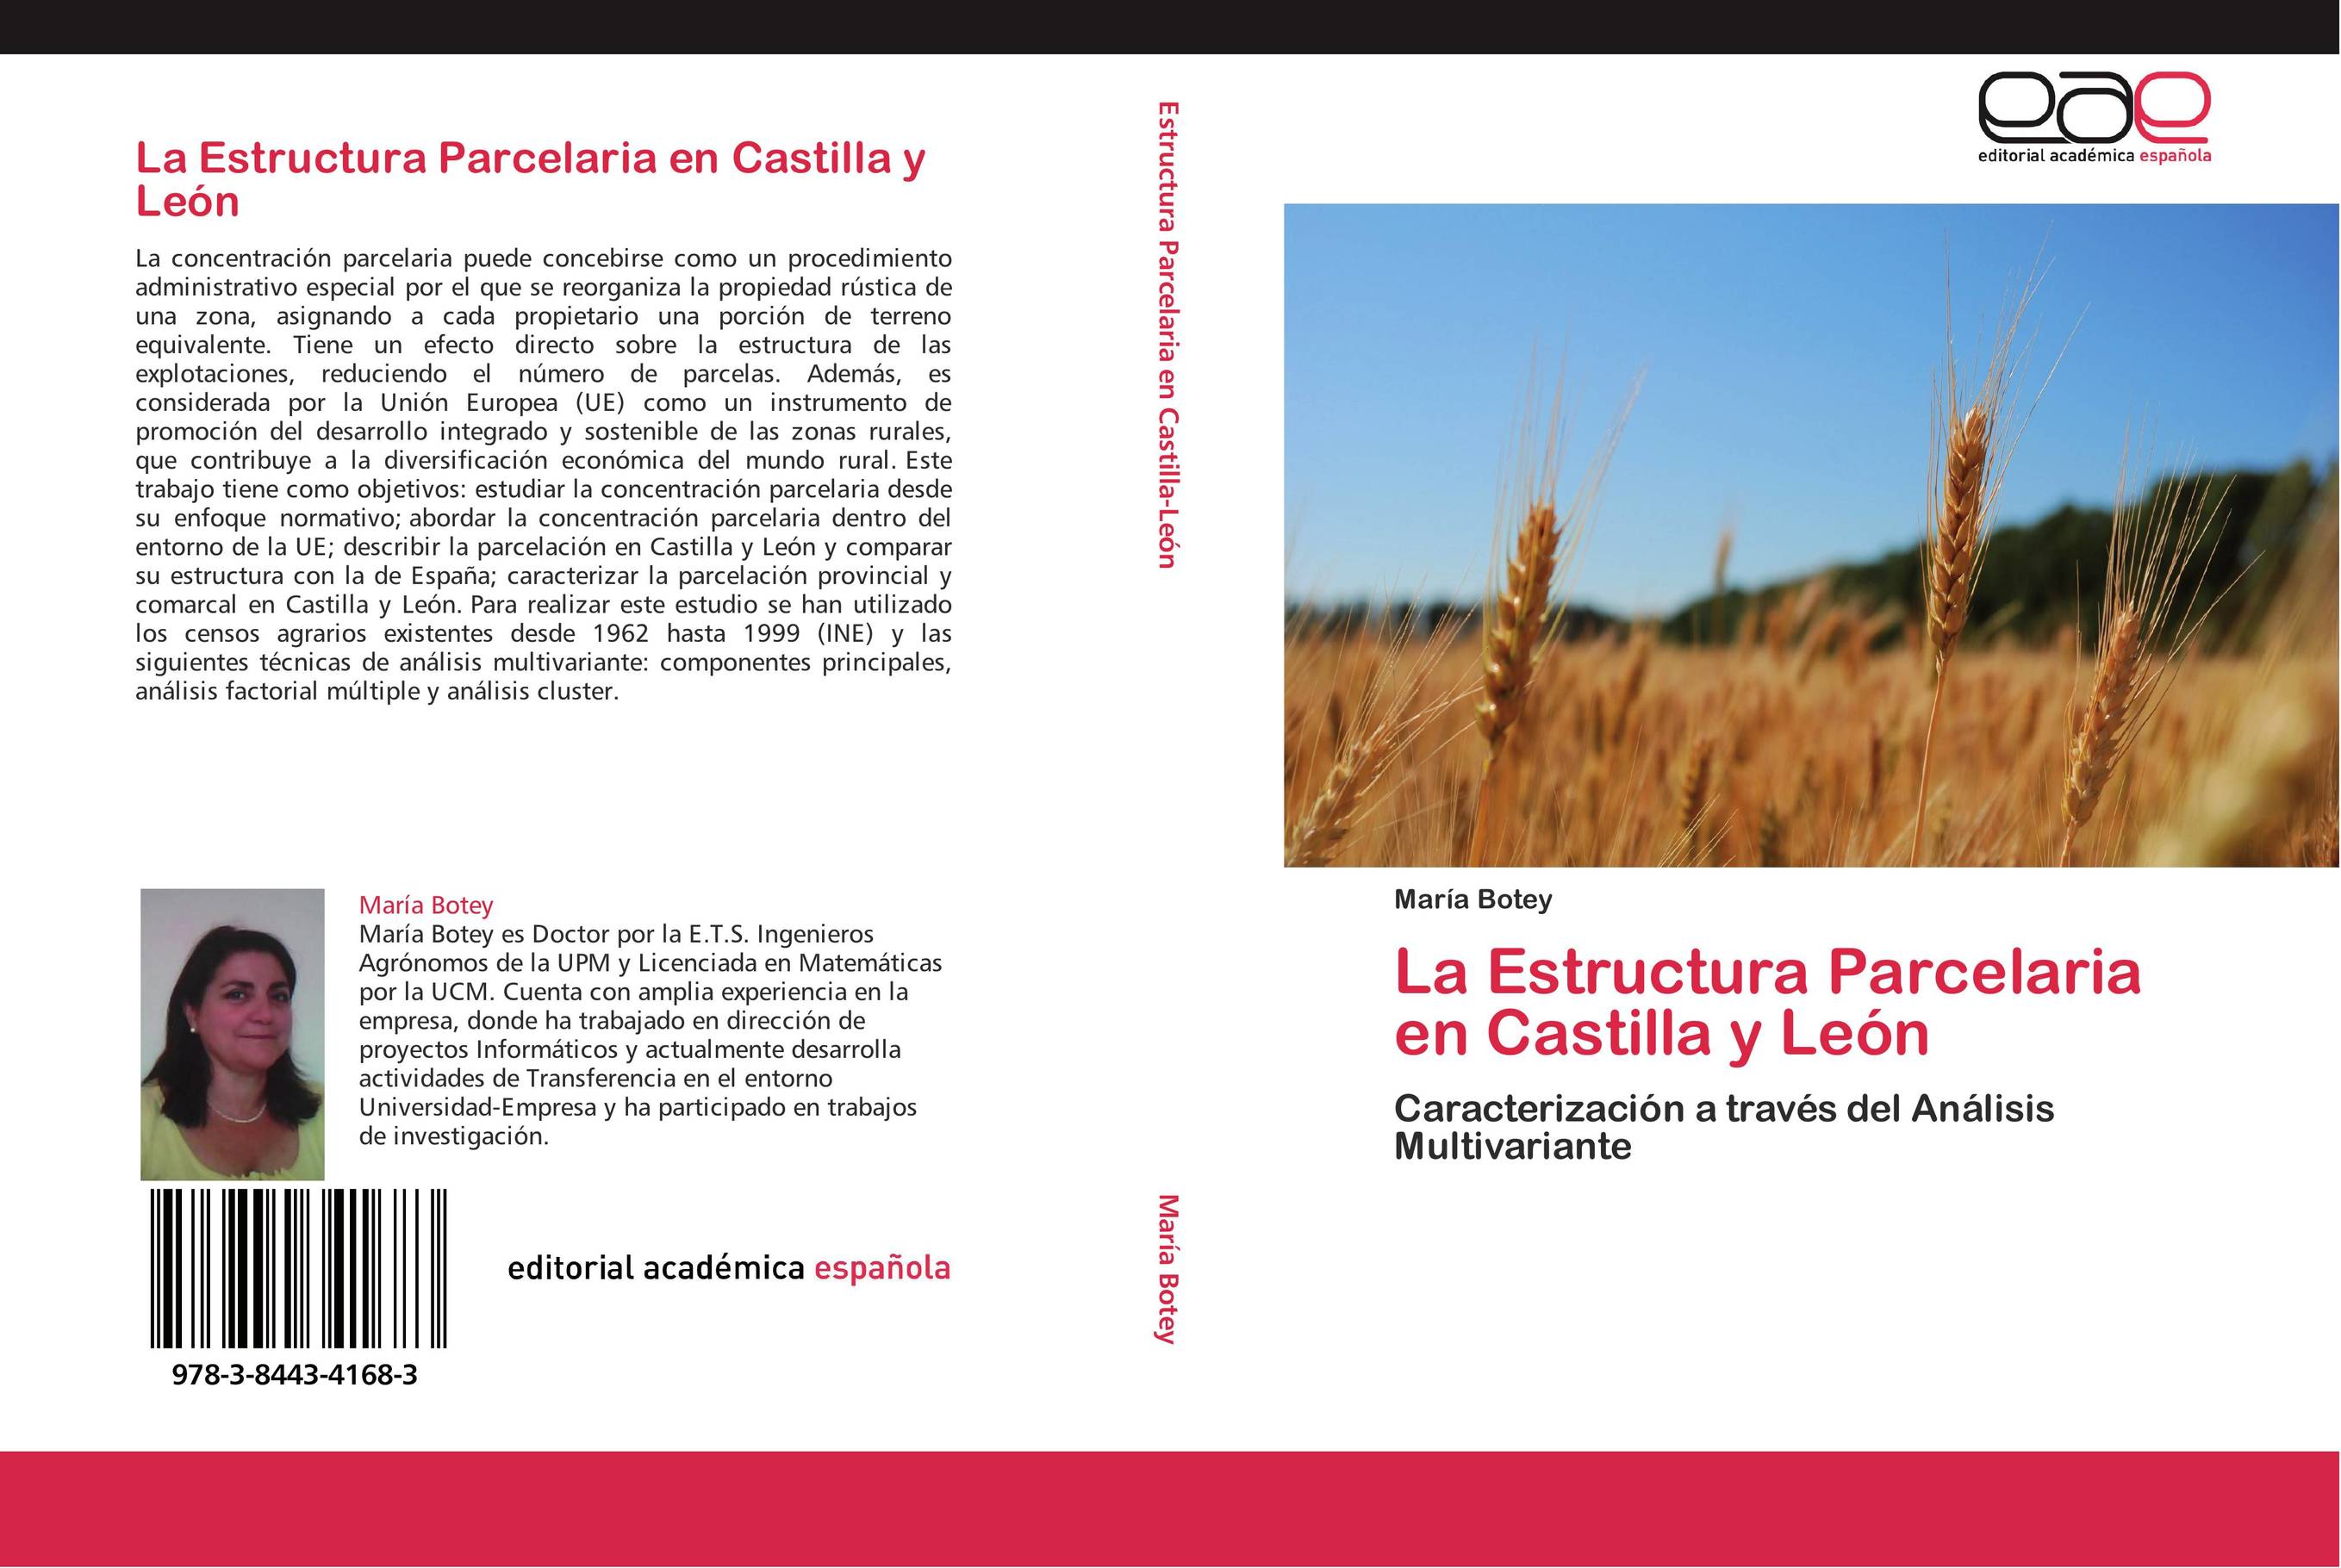 La Estructura Parcelaria en Castilla y León